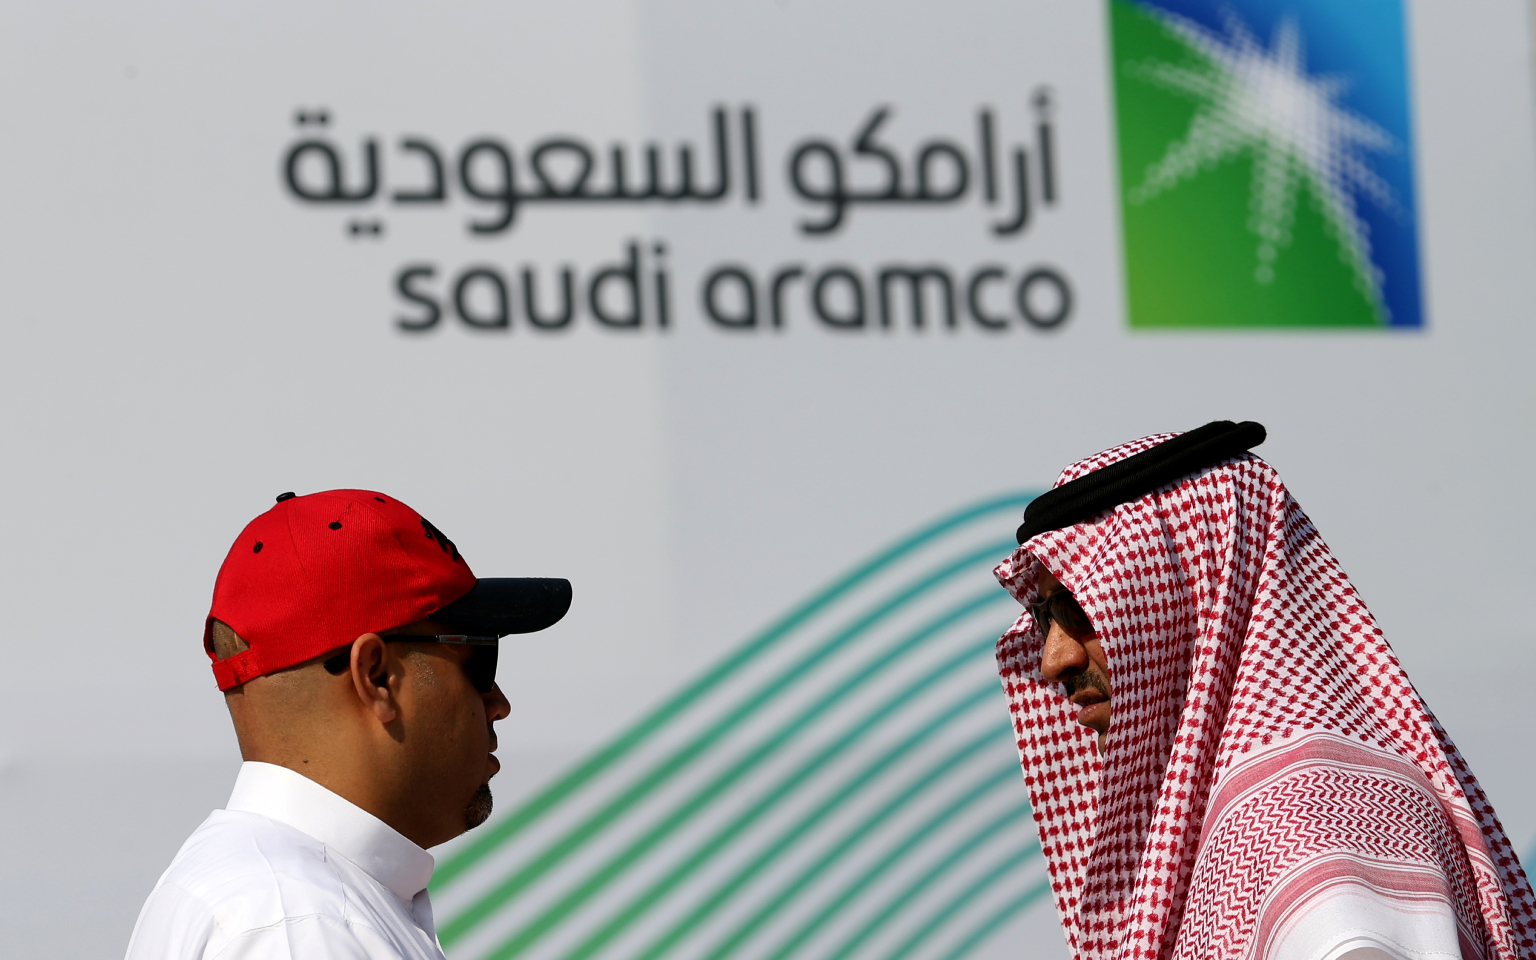 Саудовская Аравия оценила Saudi Aramco в $1,7 трлн перед IPO